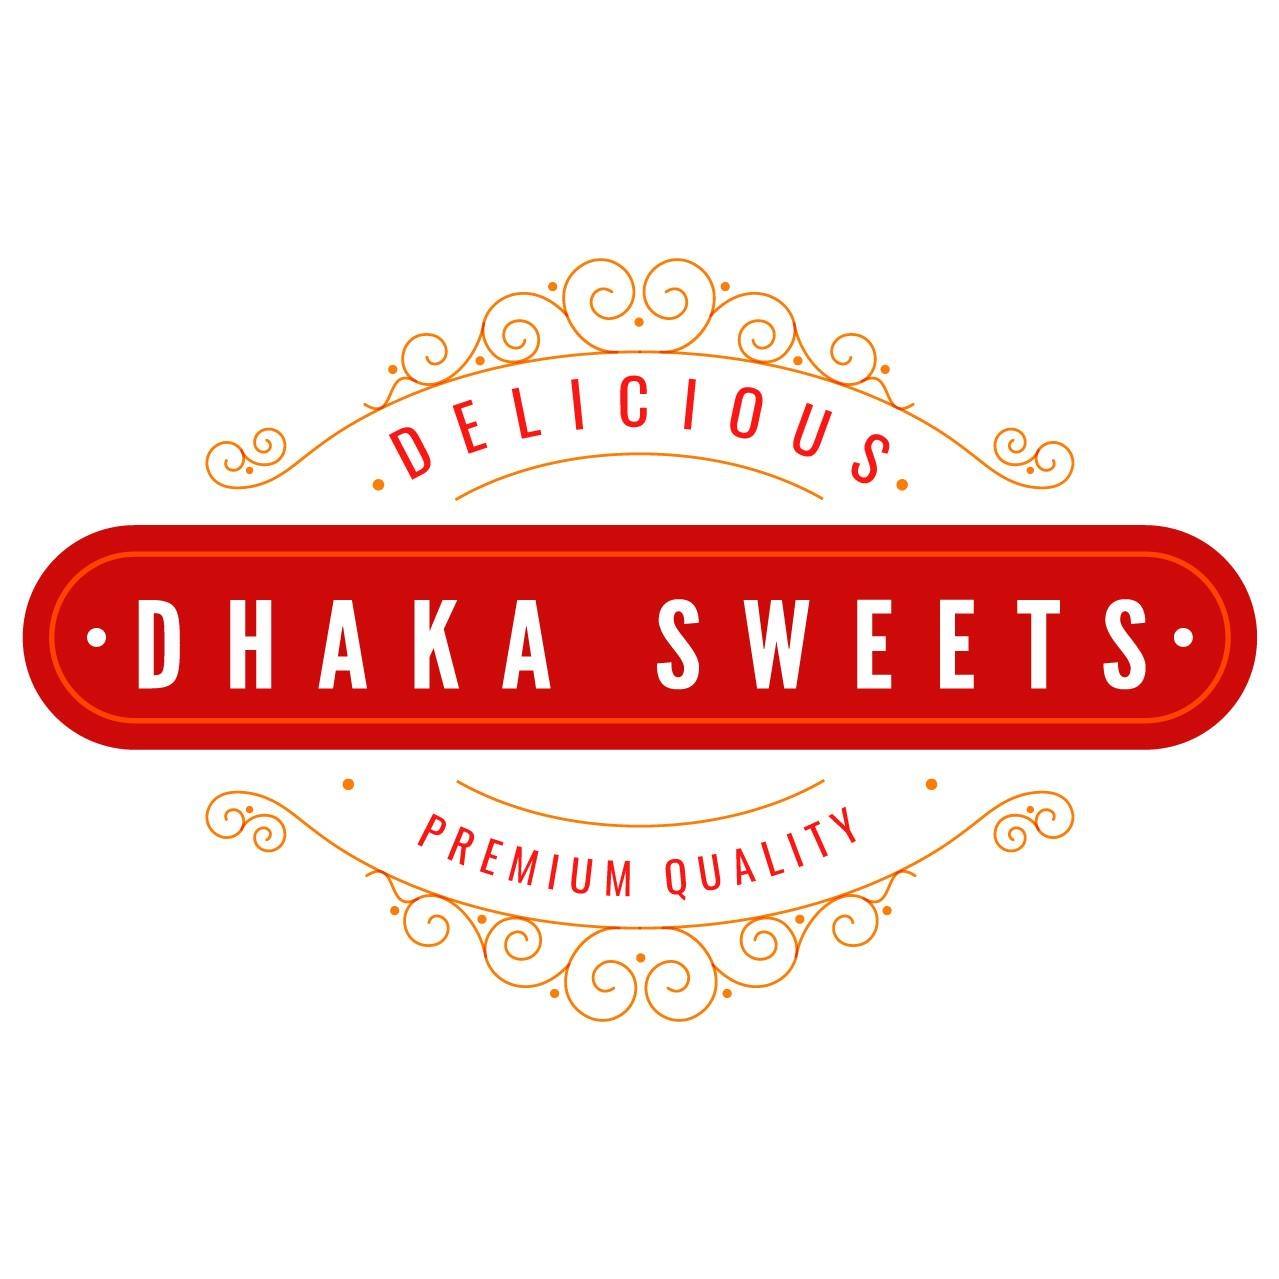 Dhaka Sweets